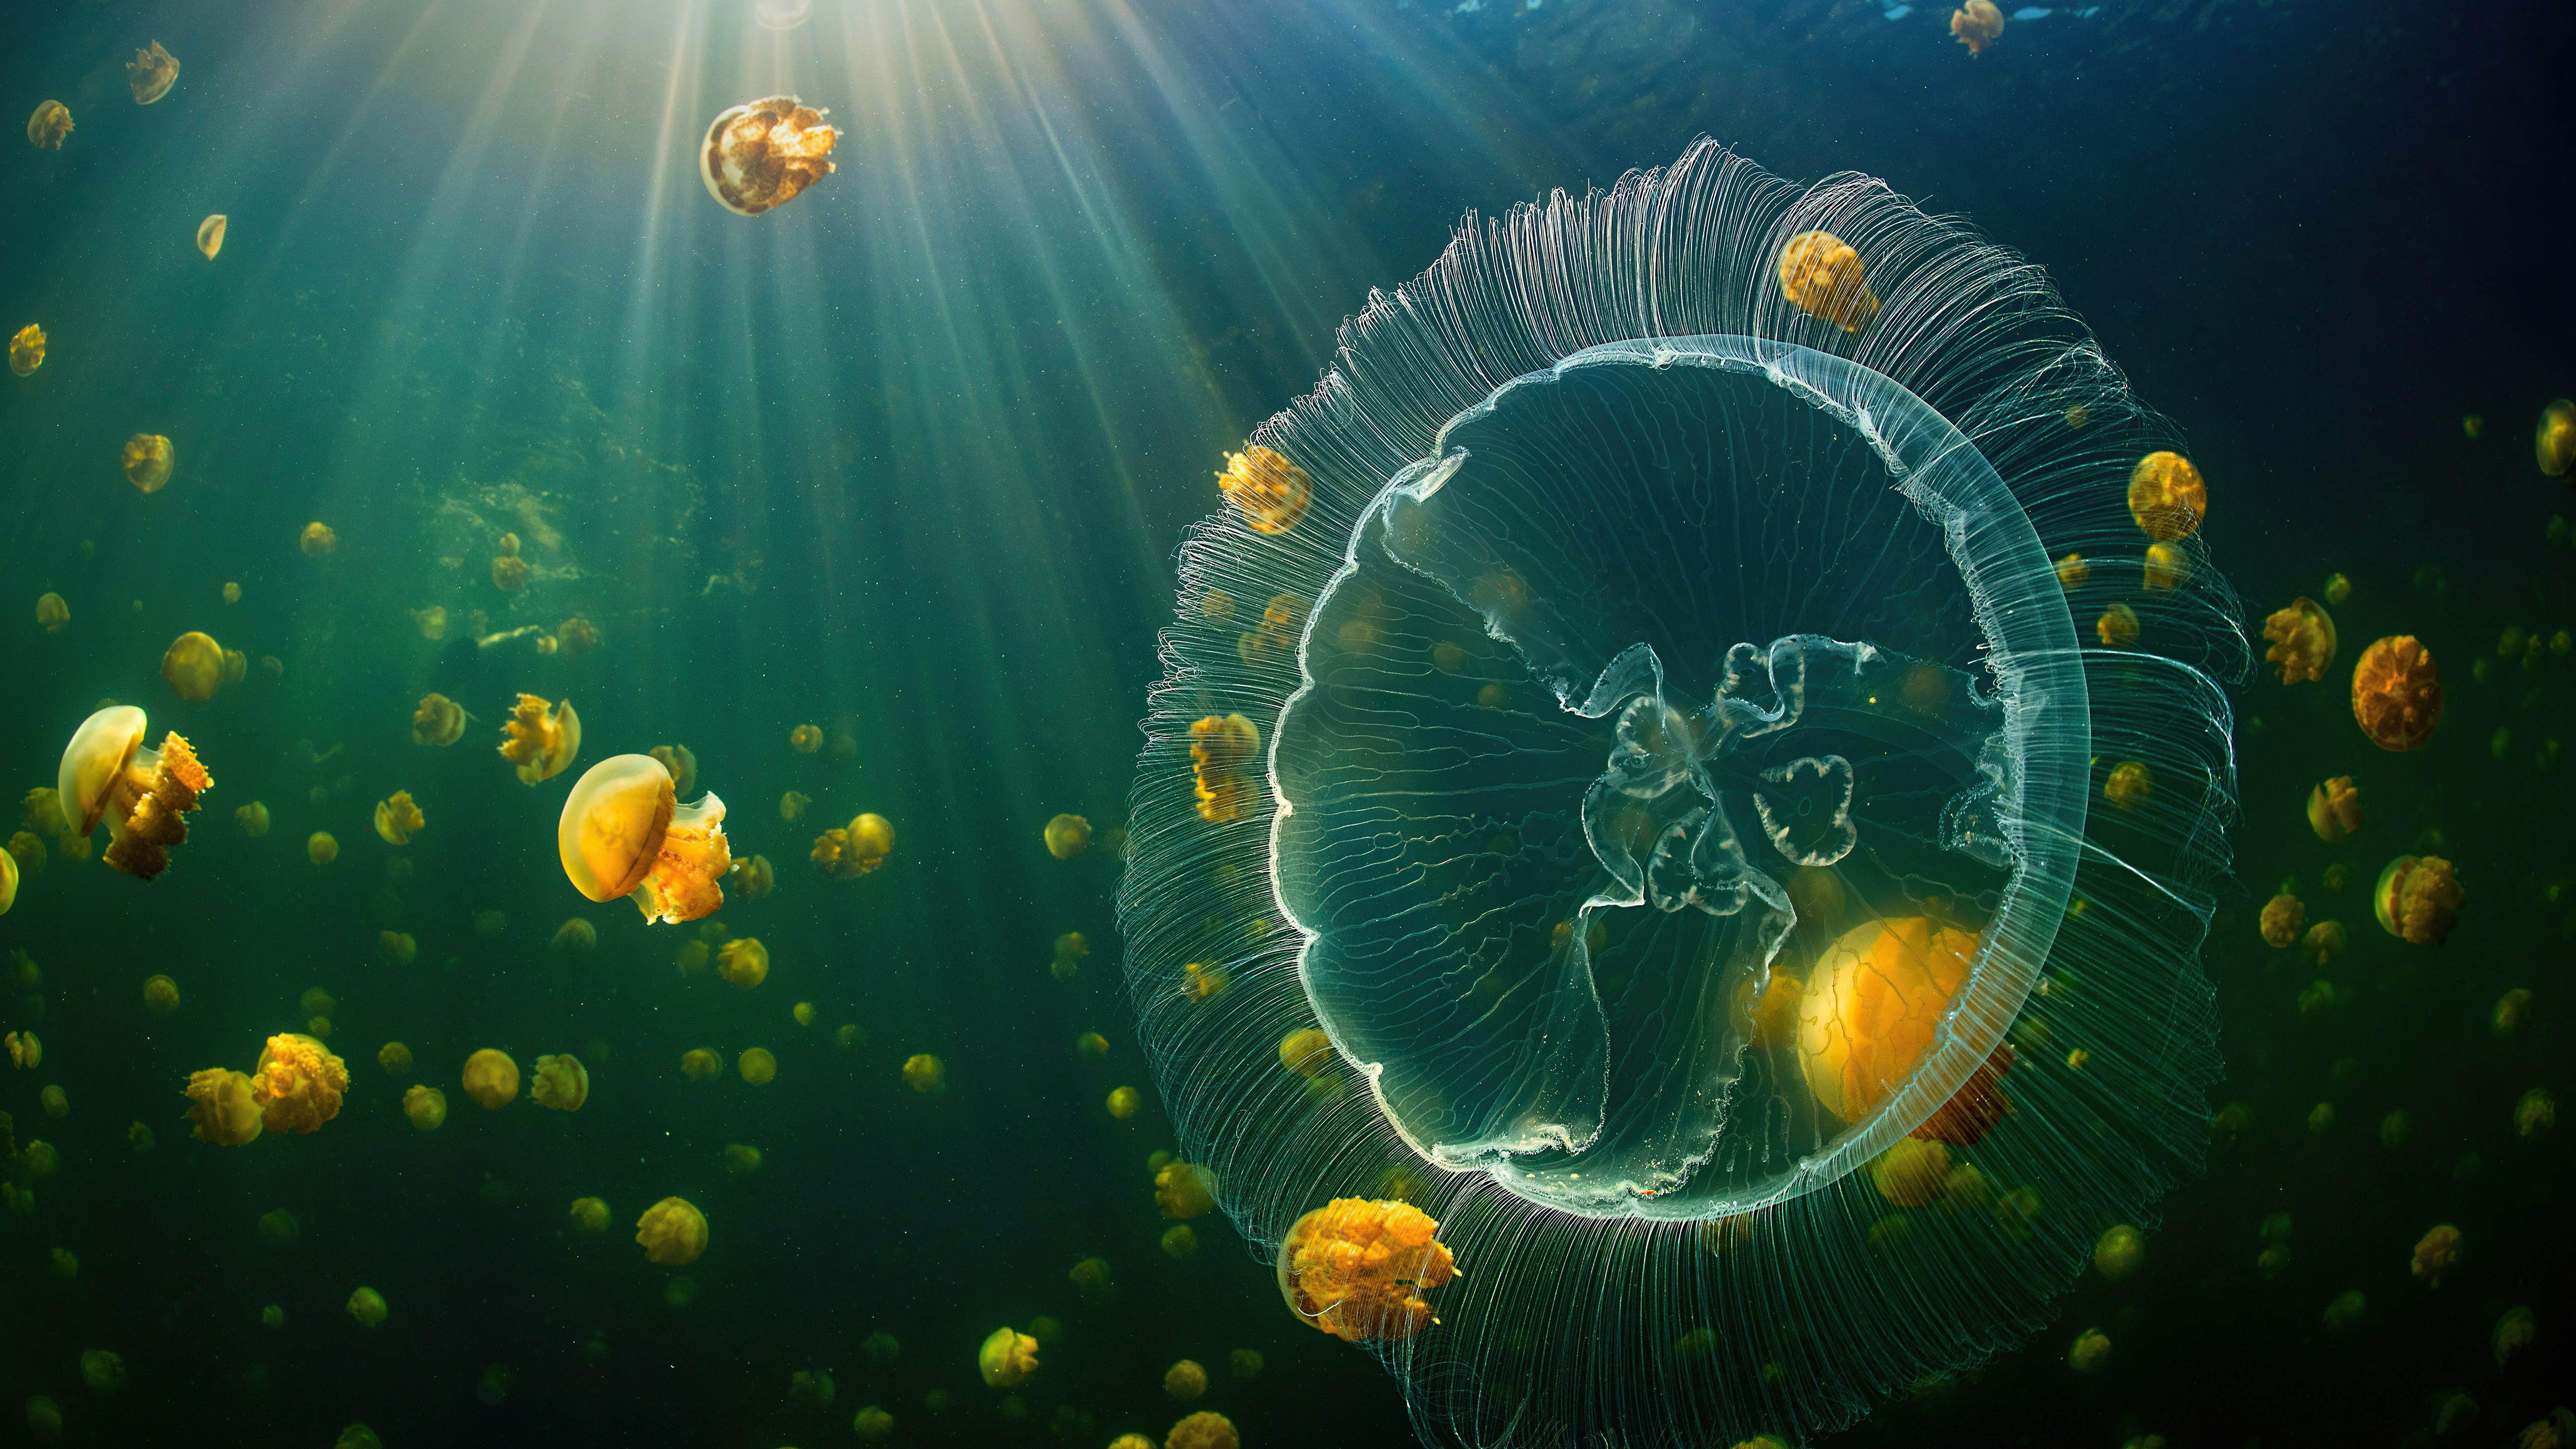 Раджа Ампат царство медуз